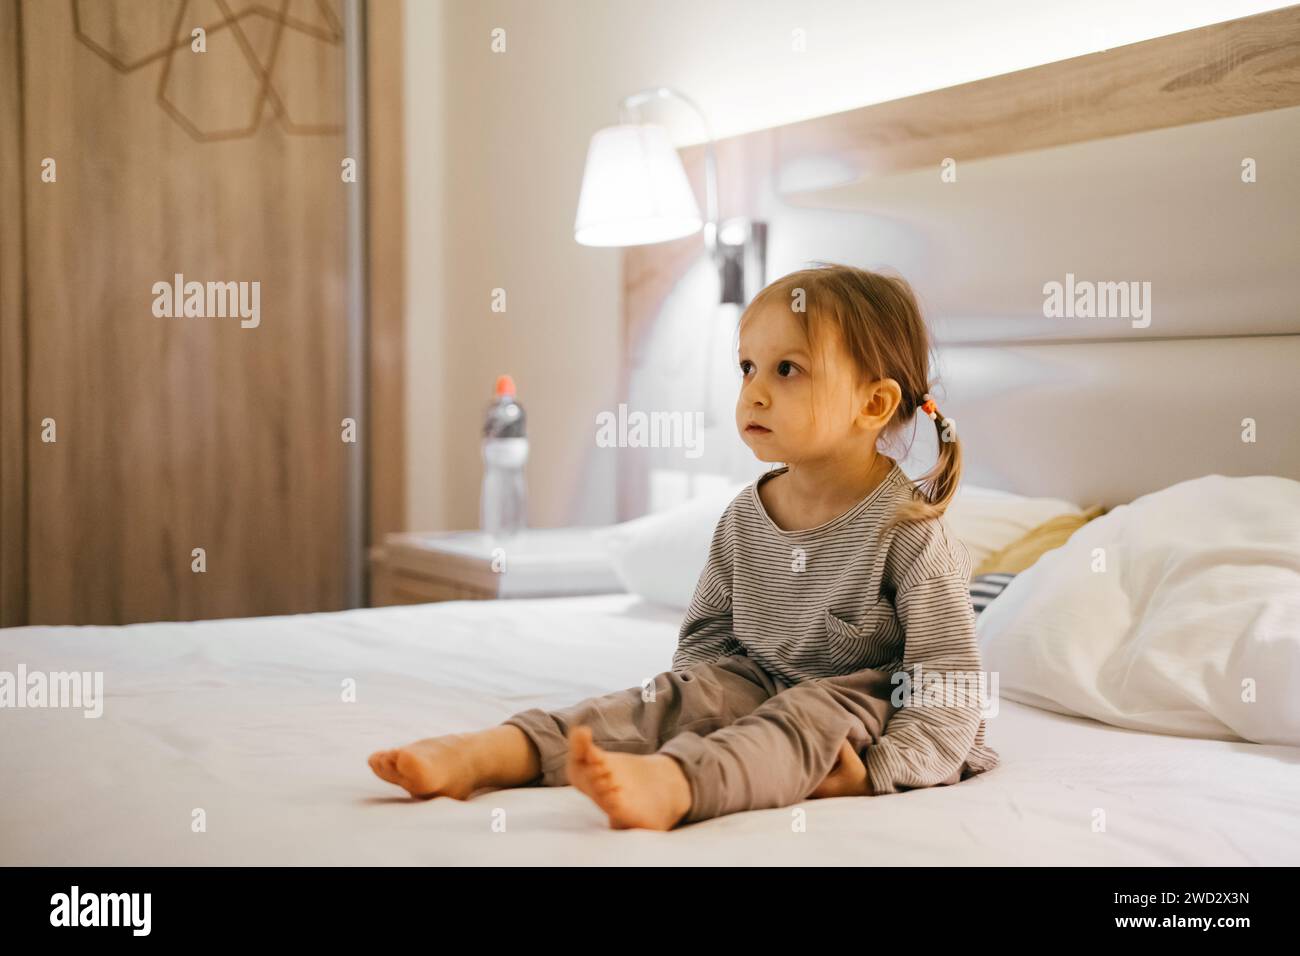 Jeune fille fatiguée assise dans la chambre d'hôtel sur le lit le soir. Avant le coucher enfant triste attendant de dormir. Banque D'Images